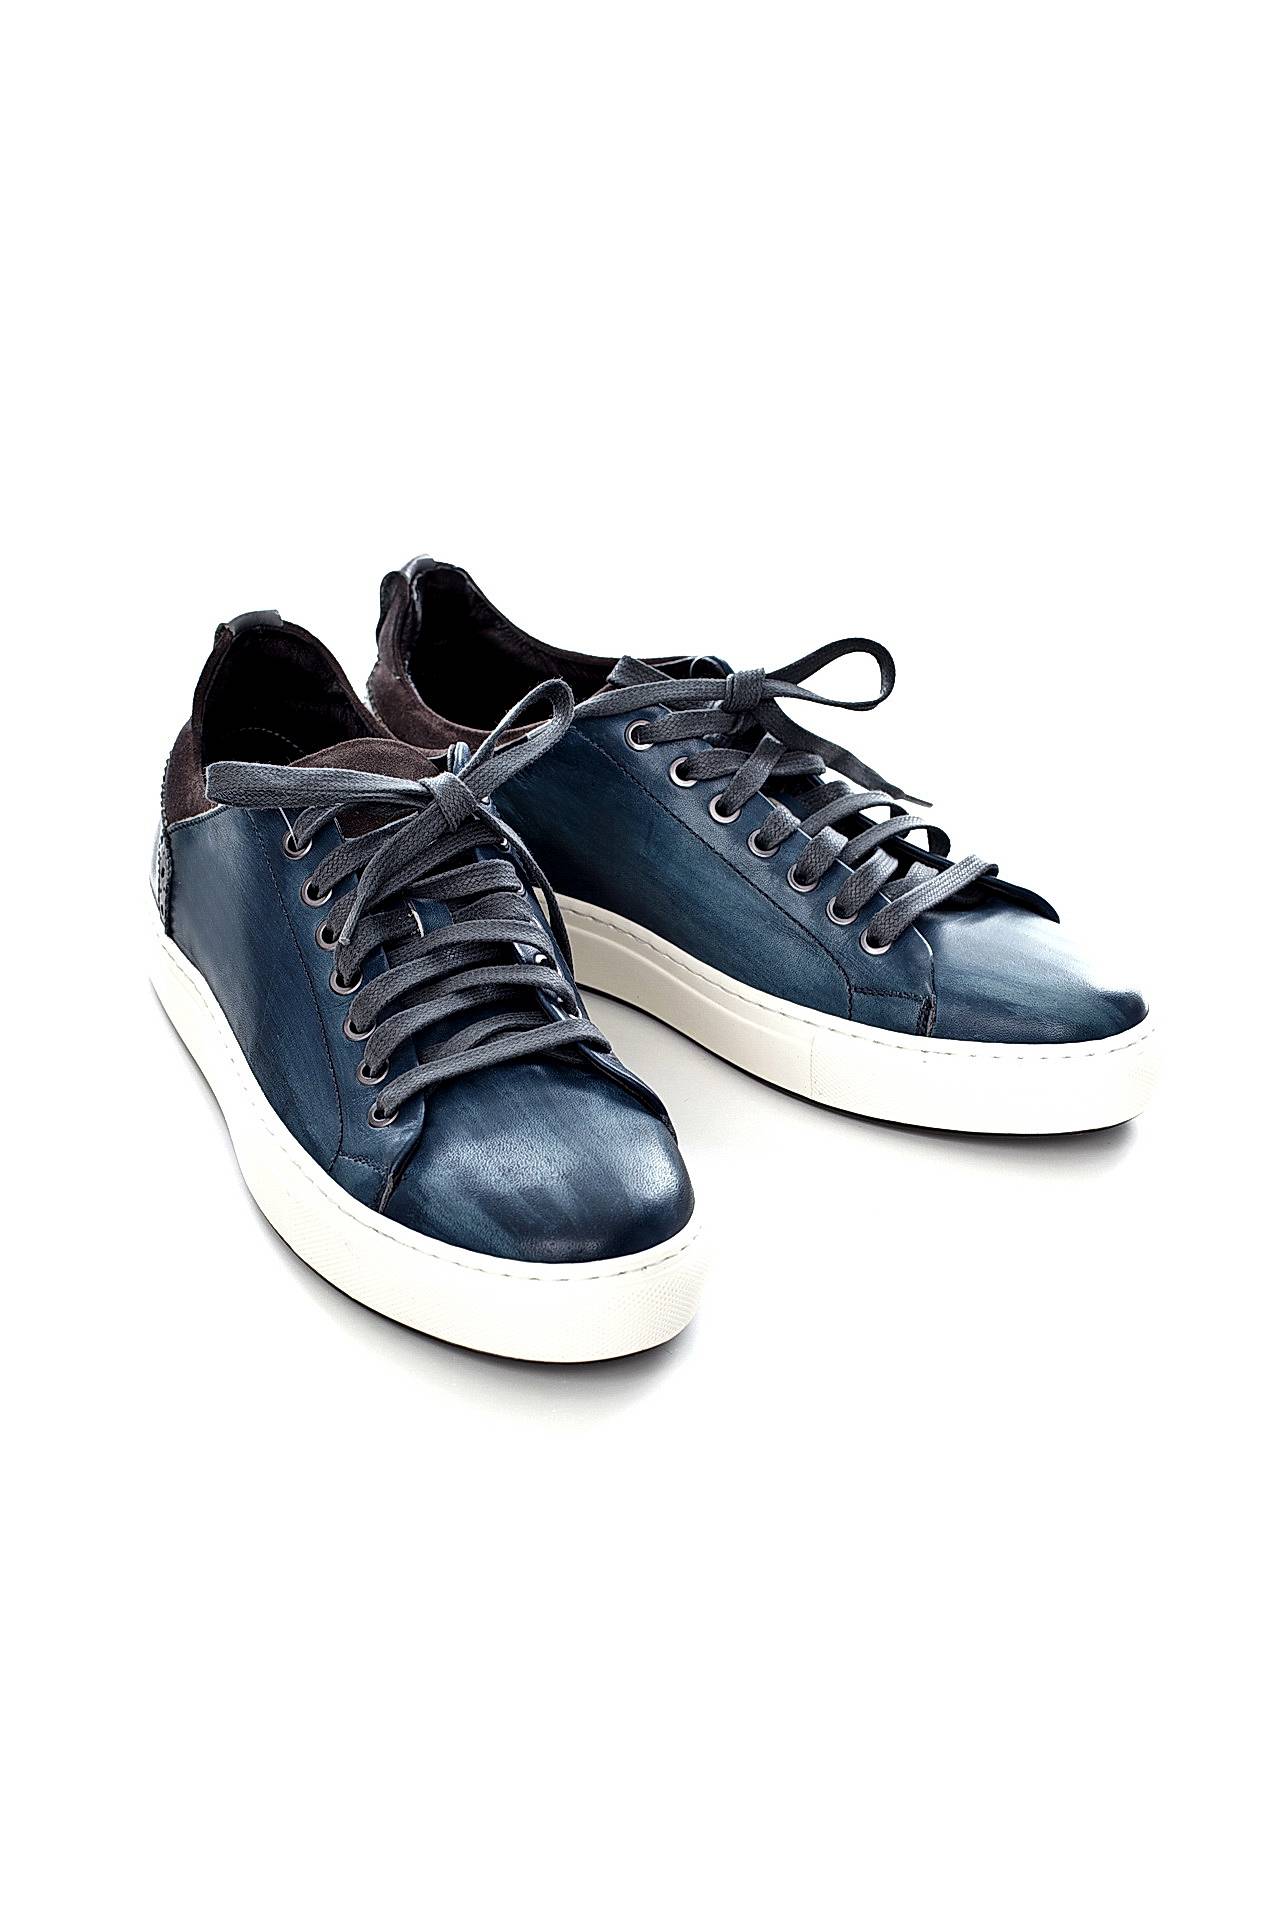 Обувь мужская Кроссовки LETICIA MILANO by Lestrosa (971/17.1). Купить за 9450 руб.